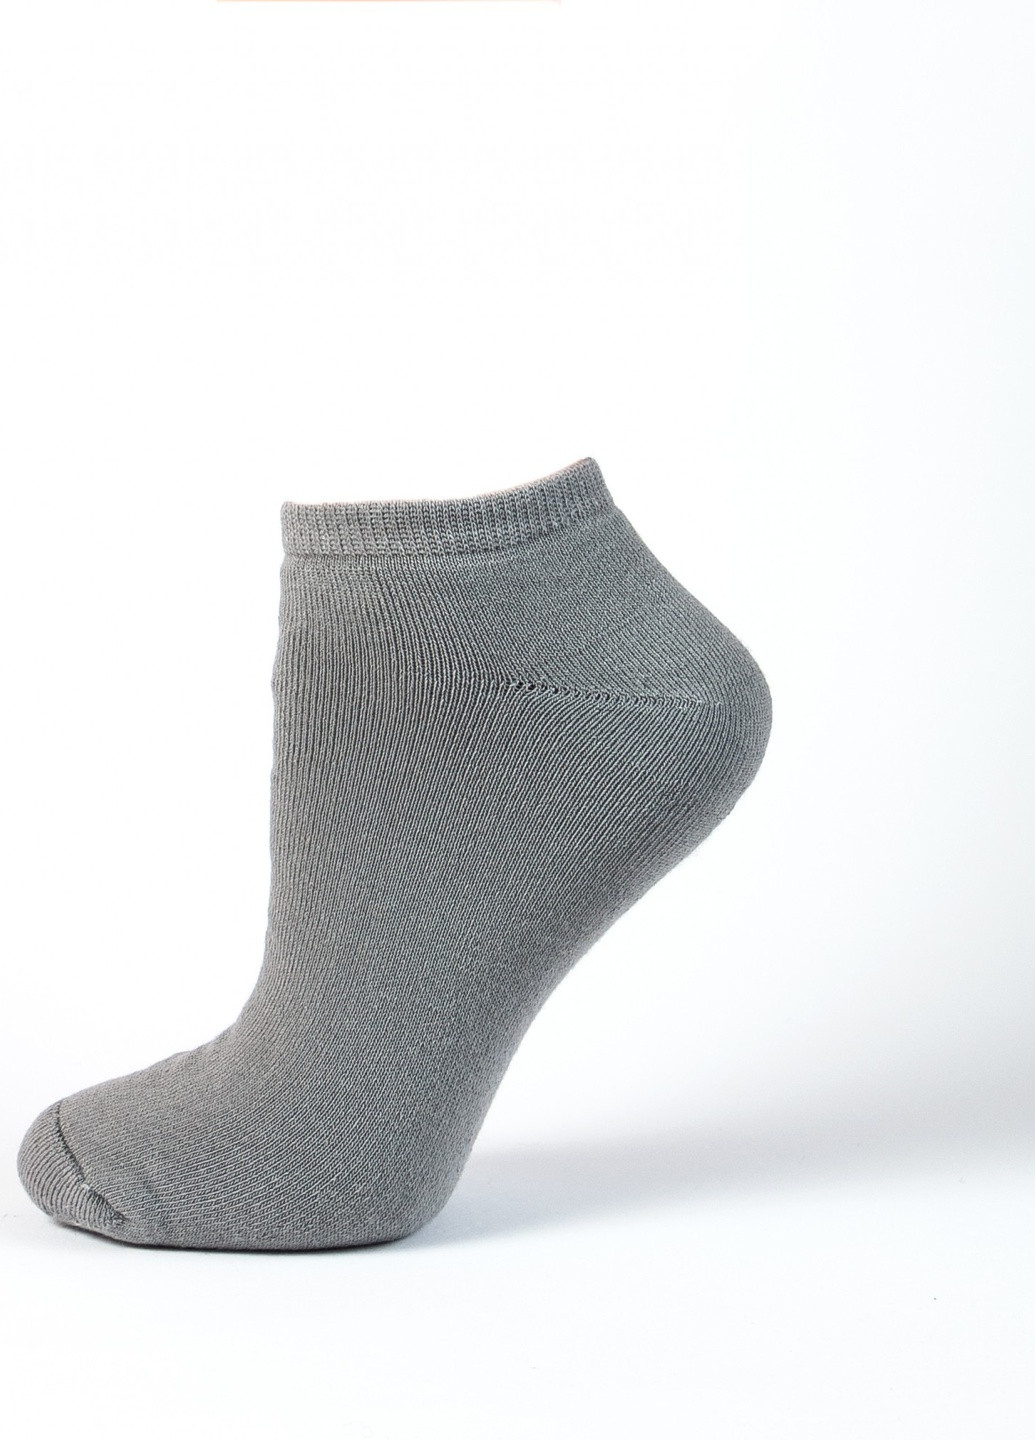 Шкарпетки плюш ТМ "Нова пара" коротка висота 108 НОВА ПАРА Короткая світло-сірі повсякденні